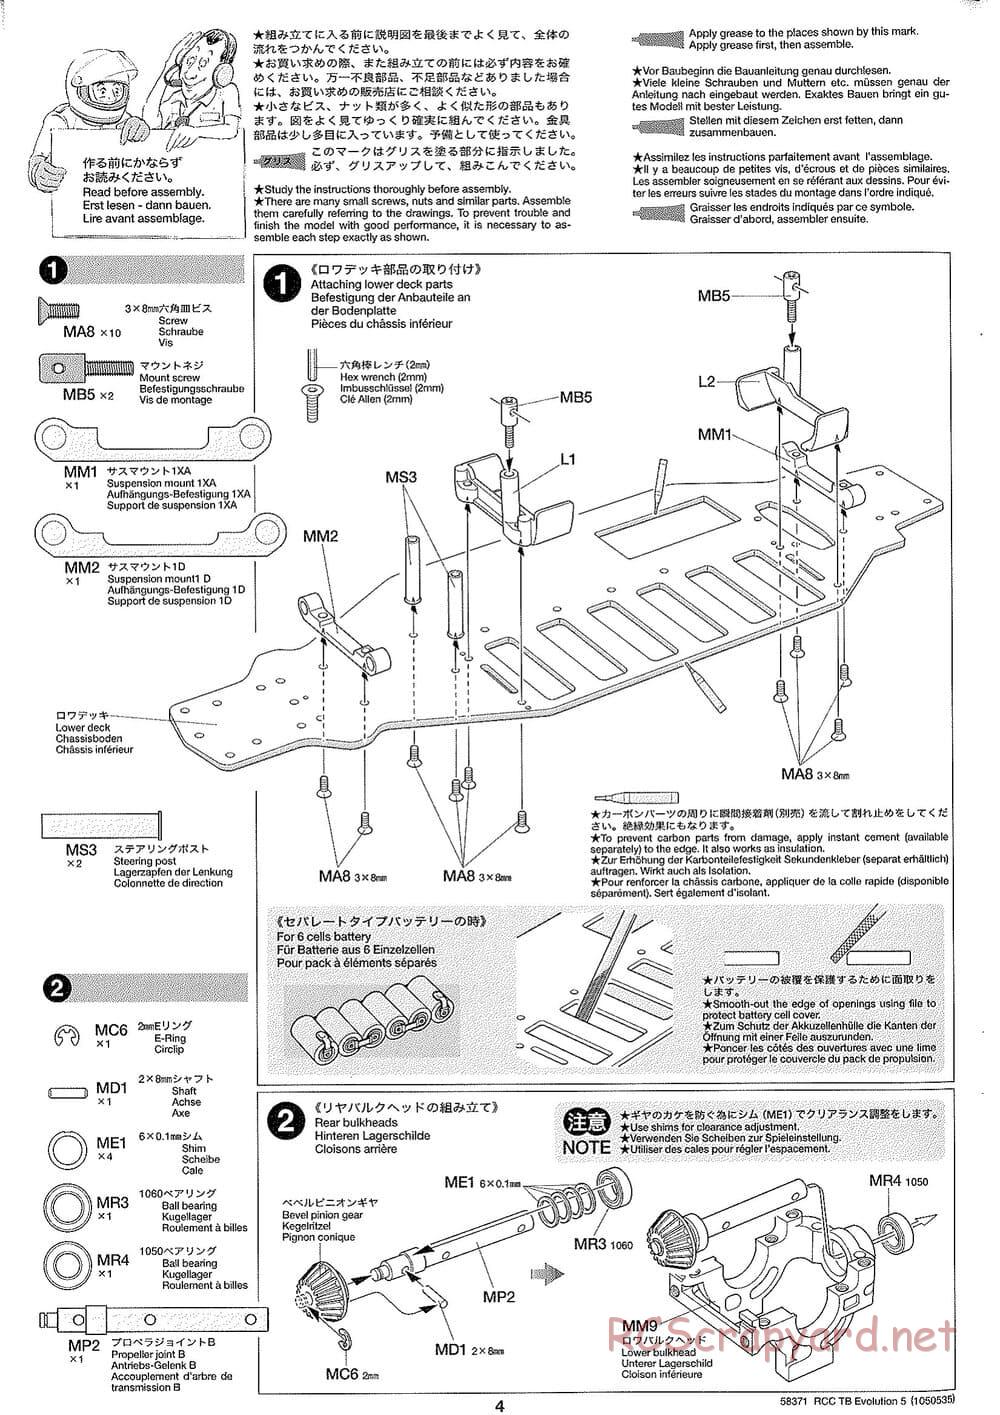 Tamiya - TB Evolution V Chassis - Manual - Page 4